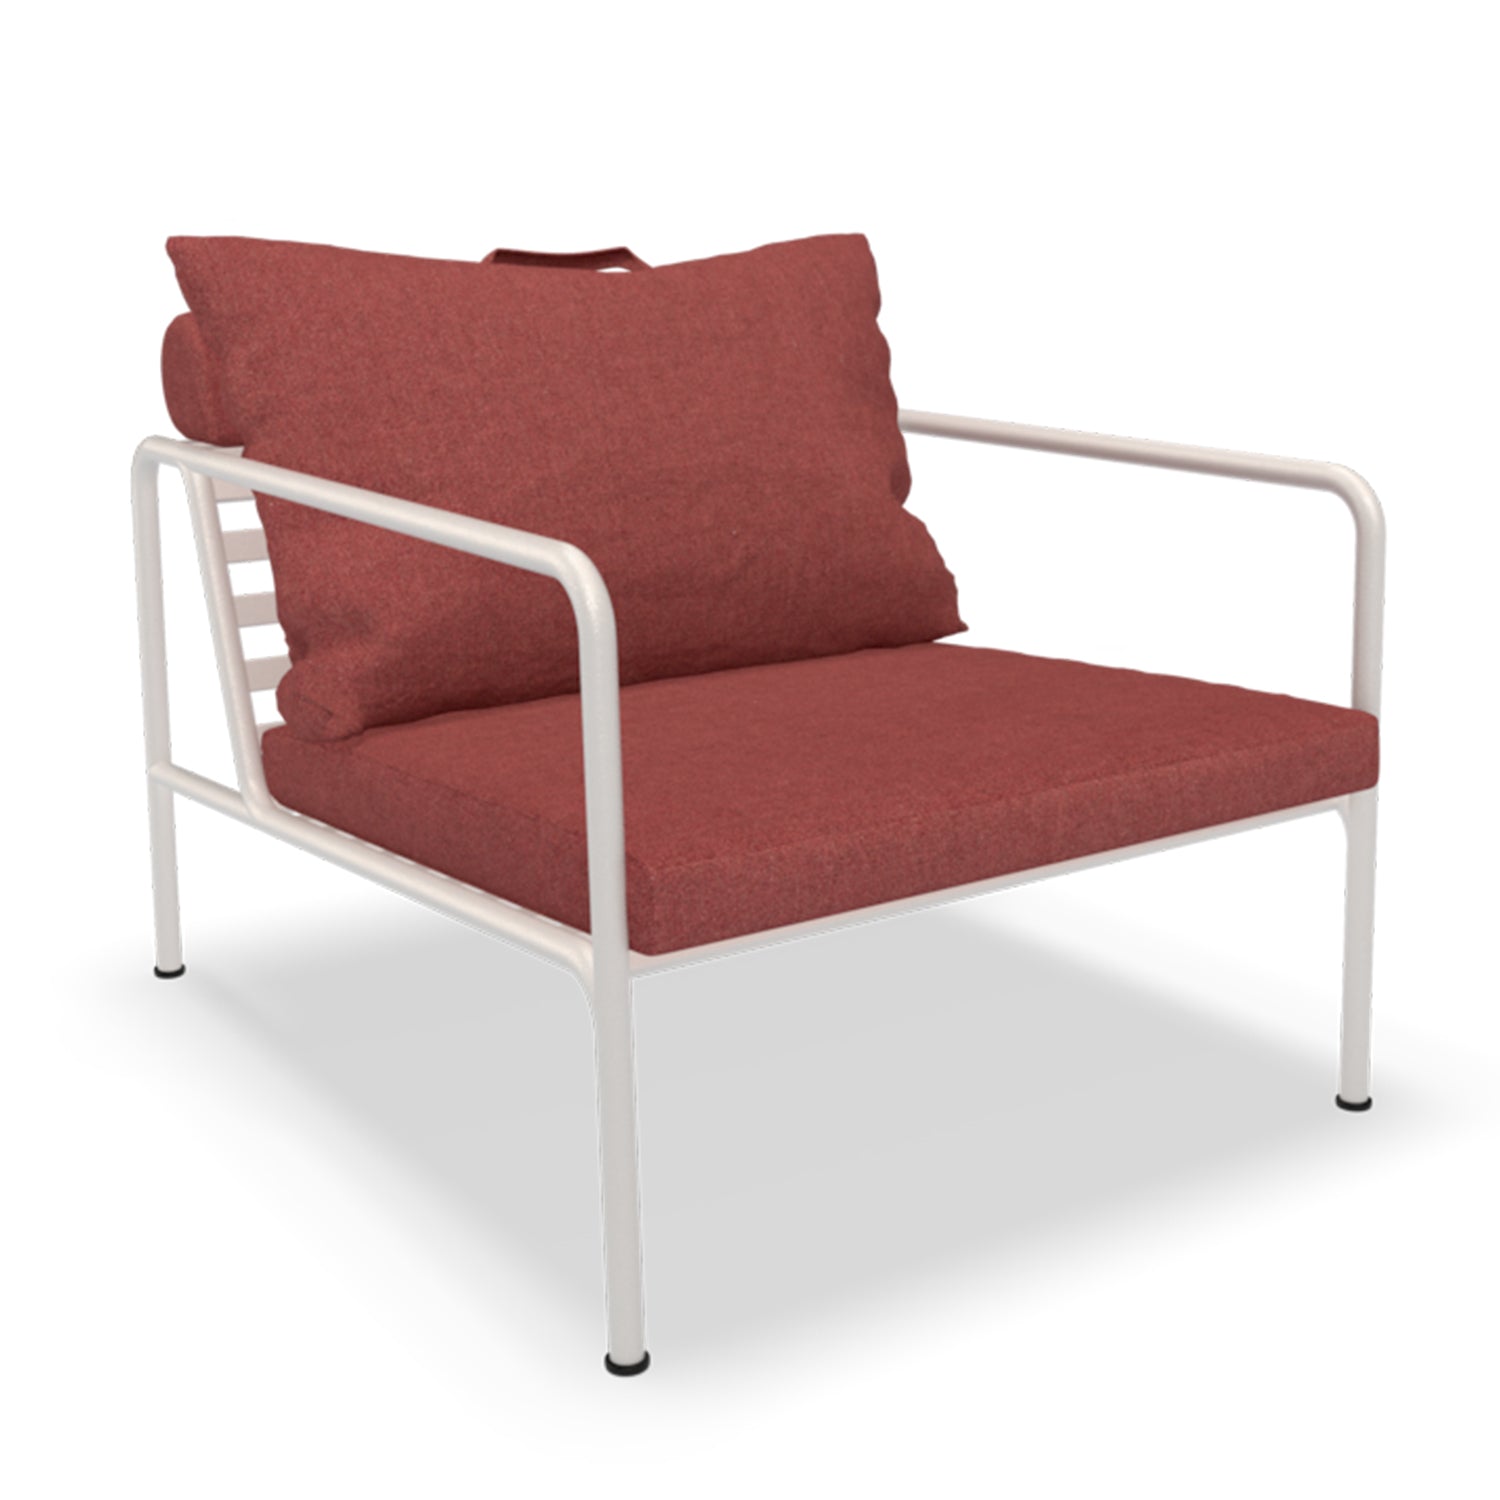 Avon Chair - The Design Choice